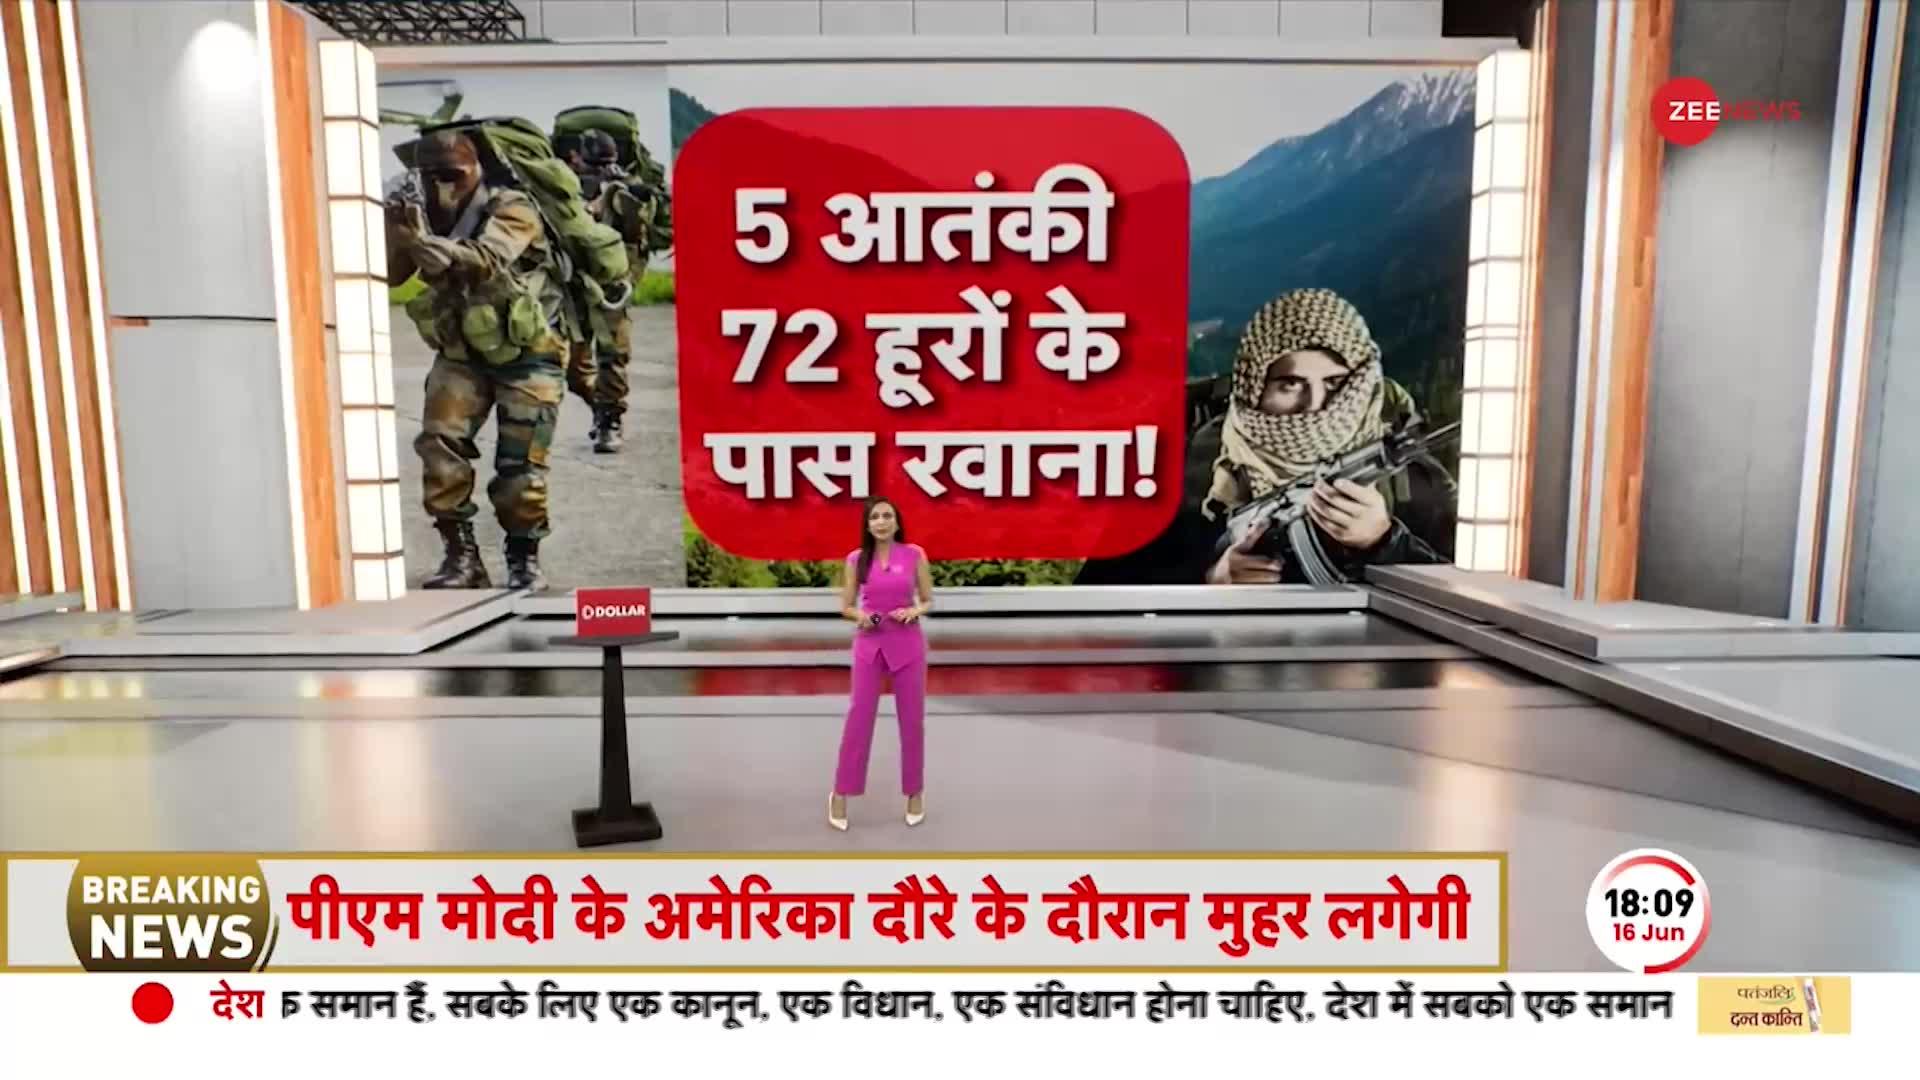 Deshhit: दिल्ली से मिले ऑर्डर ! भारतीय सेना करेगी 'पाकिस्तान' का पक्का हिसाब